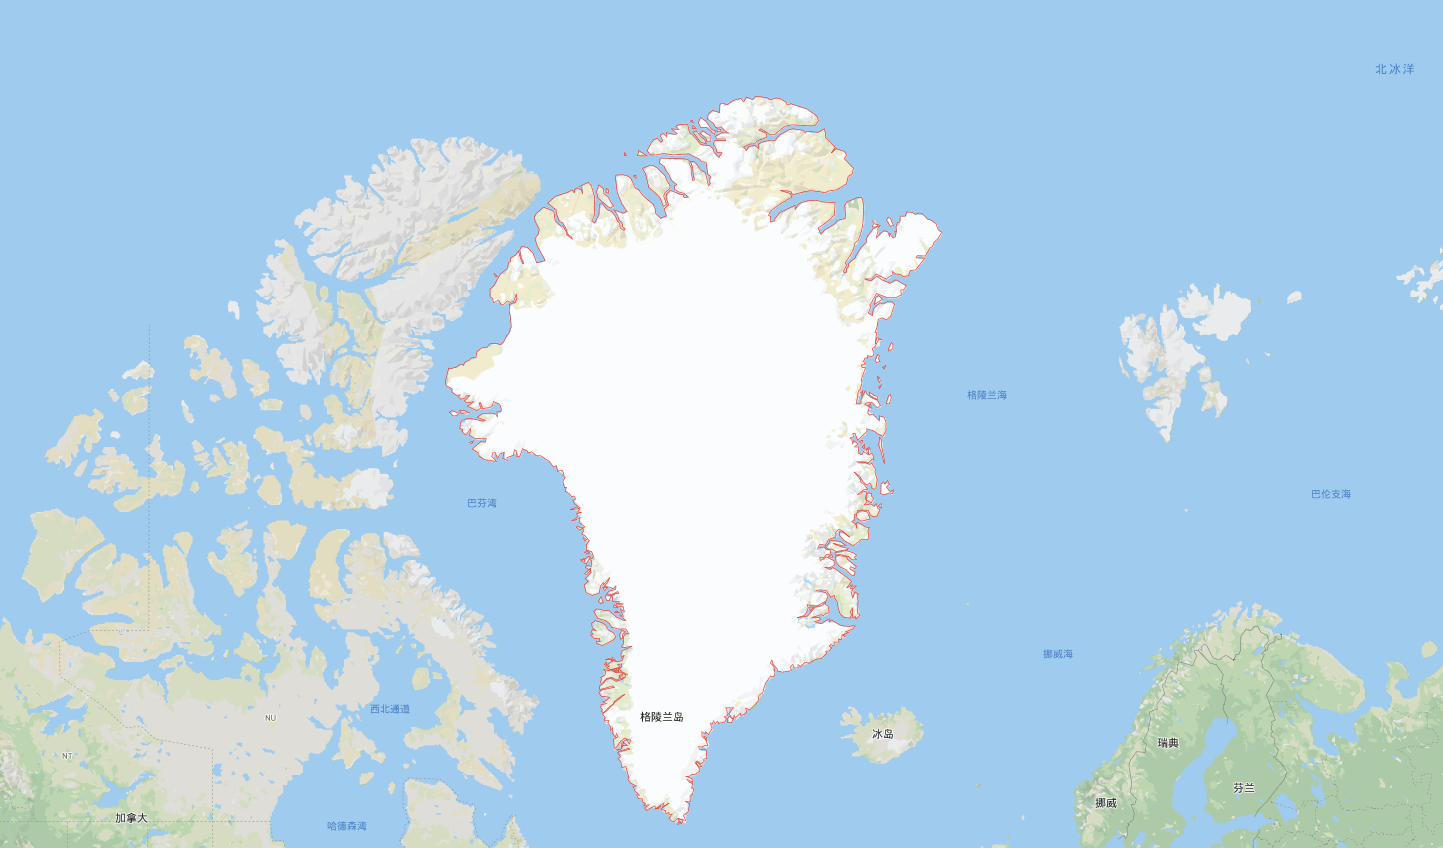 格陵兰岛地下现新世界!